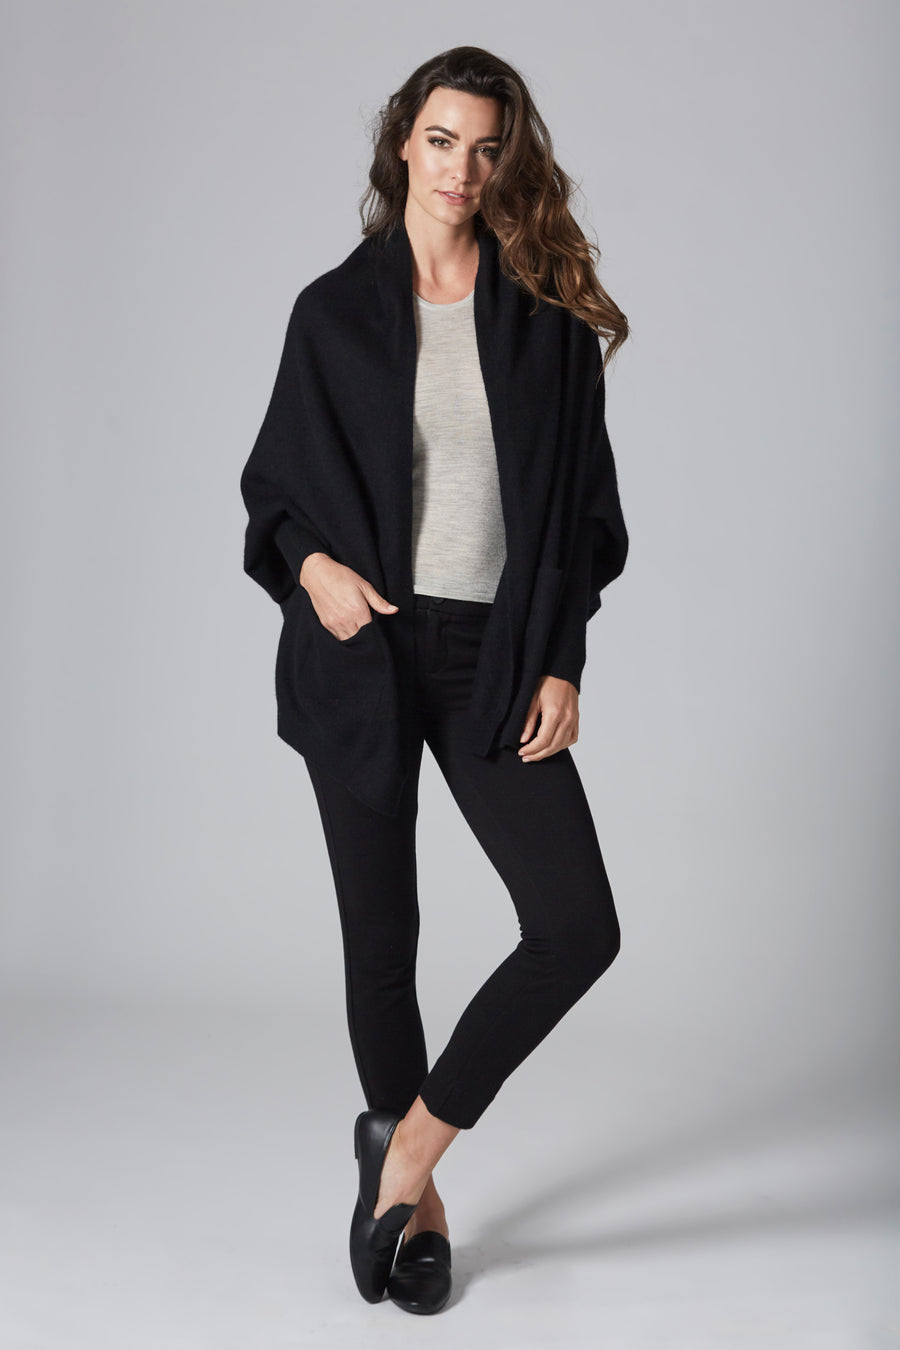 pine cashmere women's audrey multi wear 100% pure cashmere cardigan wrap black color